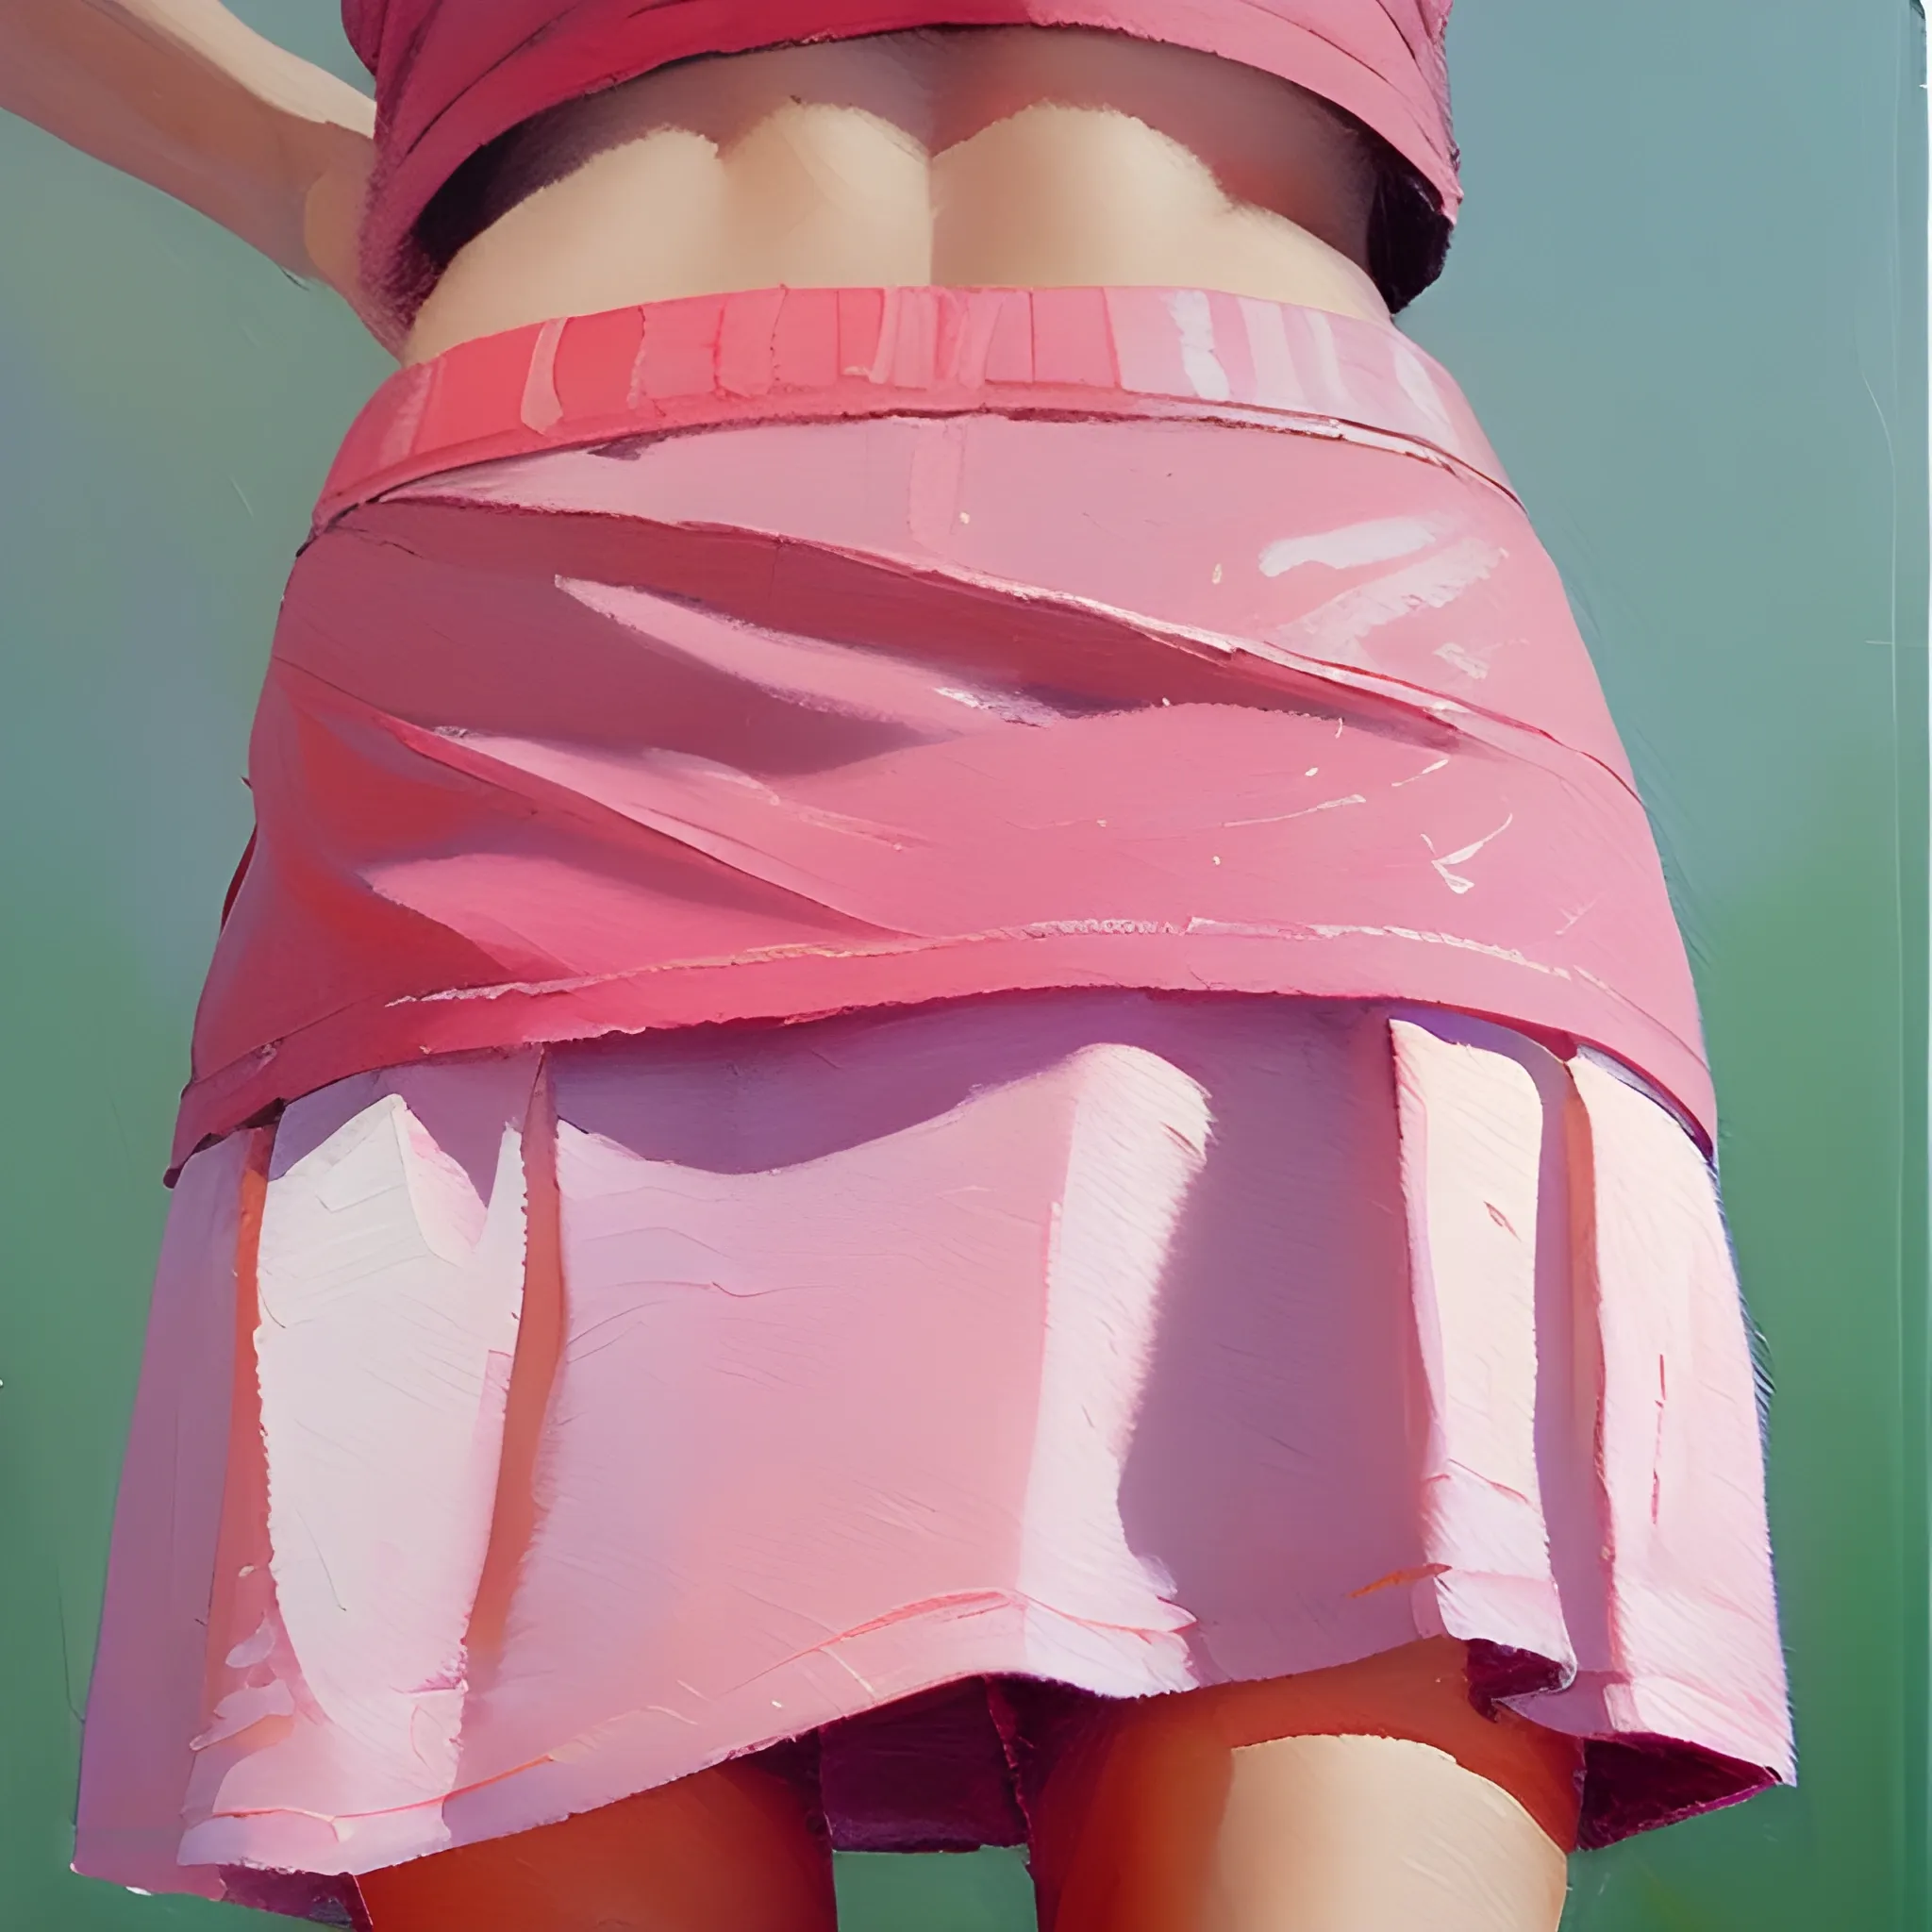 Women in a short skirt lifts skirt reveal her pink underwear , O 